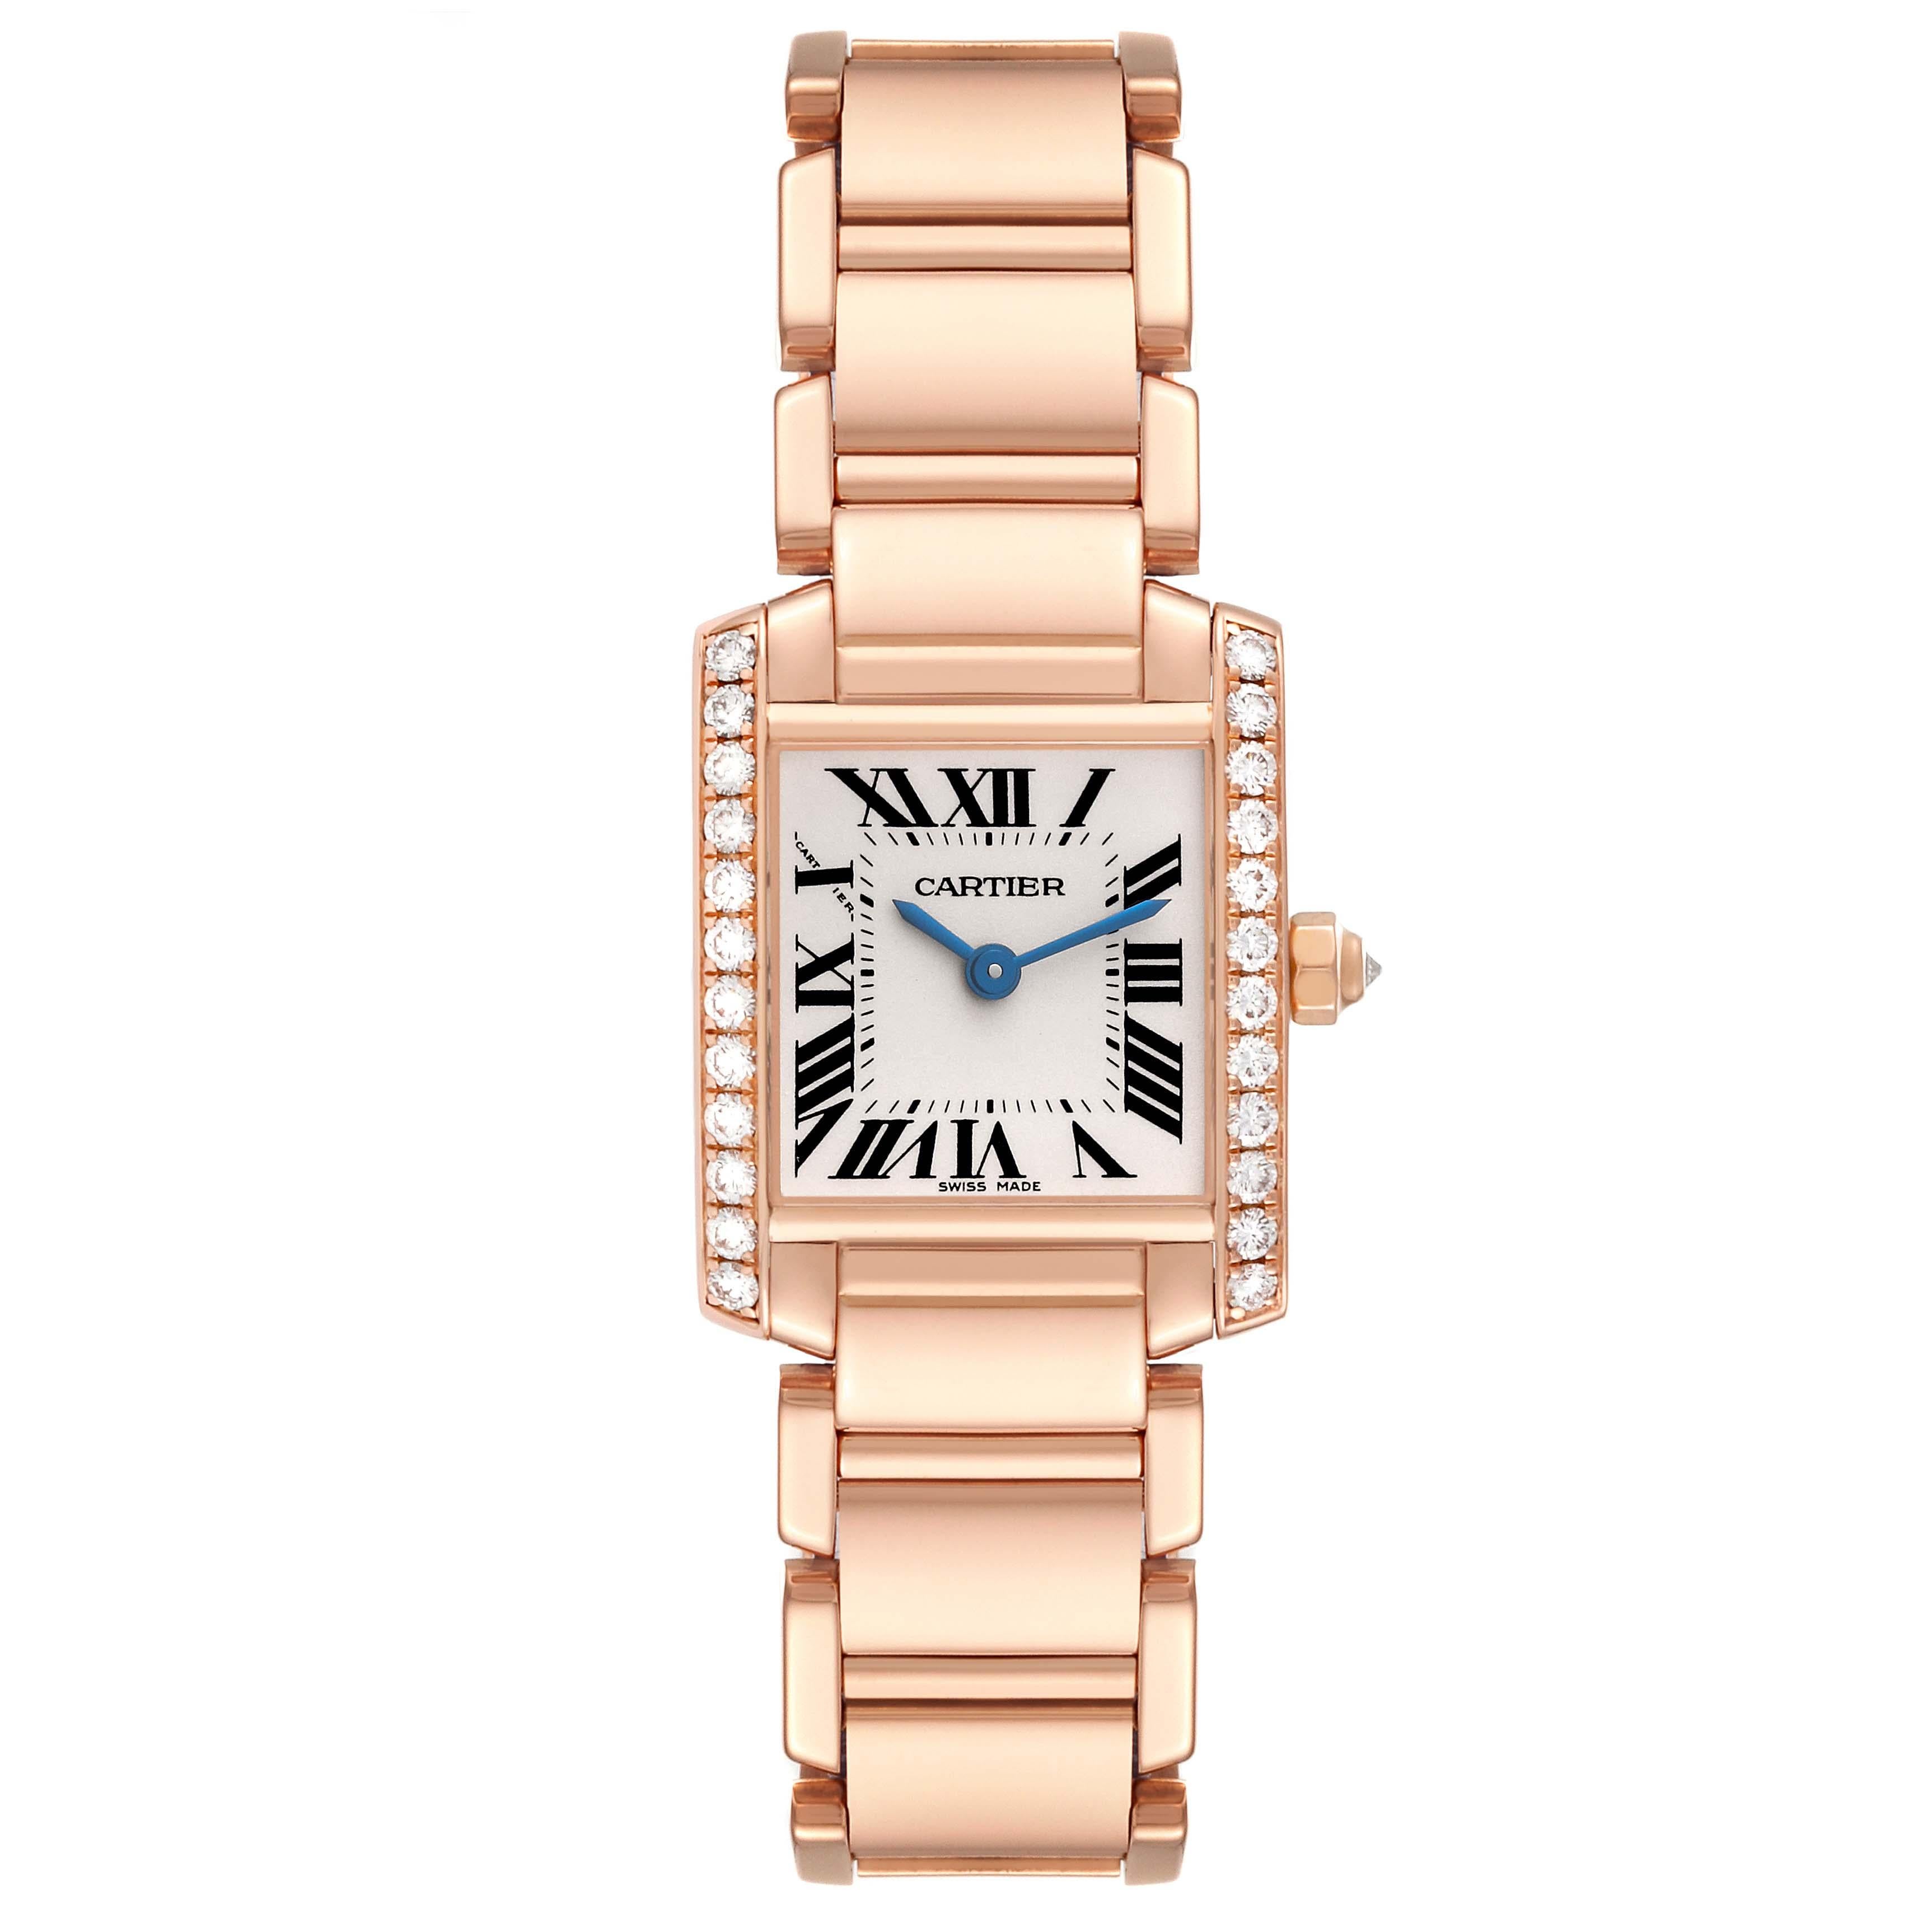 Cartier Tank Francaise Small Rose Gold Diamond Ladies Watch WE10456H. Mouvement à quartz. Boîtier rectangulaire en or rose 18 carats, 25,0 x 20,0 mm. Couronne octogonale sertie d'un diamant d'origine de la manufacture Cartier. Lunette en diamant